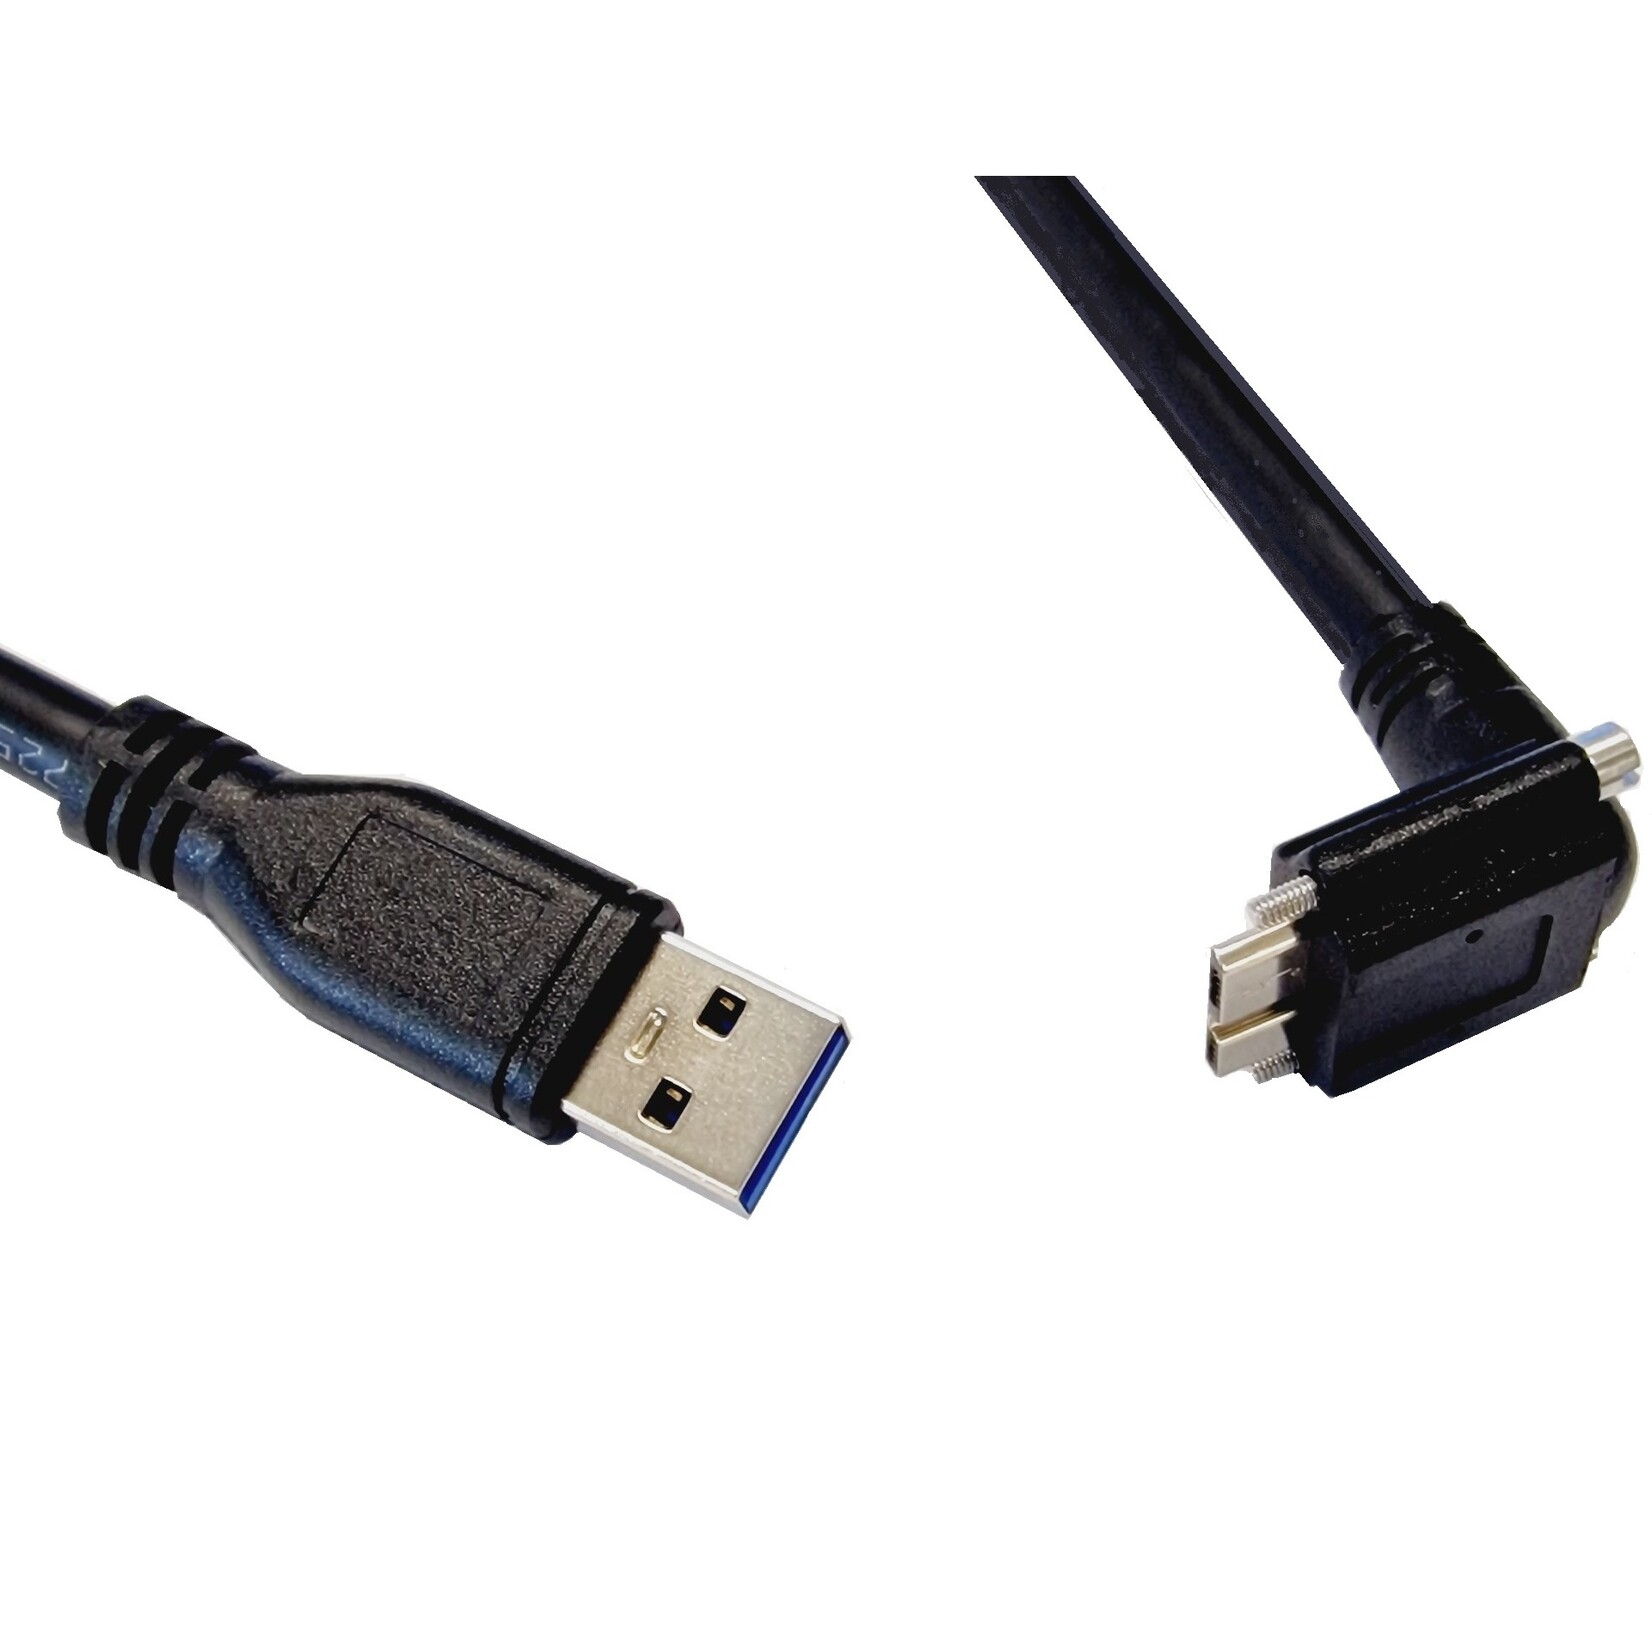 Kabel standardowy USB 3, USB Mico B z wkrętami odchylony do tyłu o długości 3 metrów